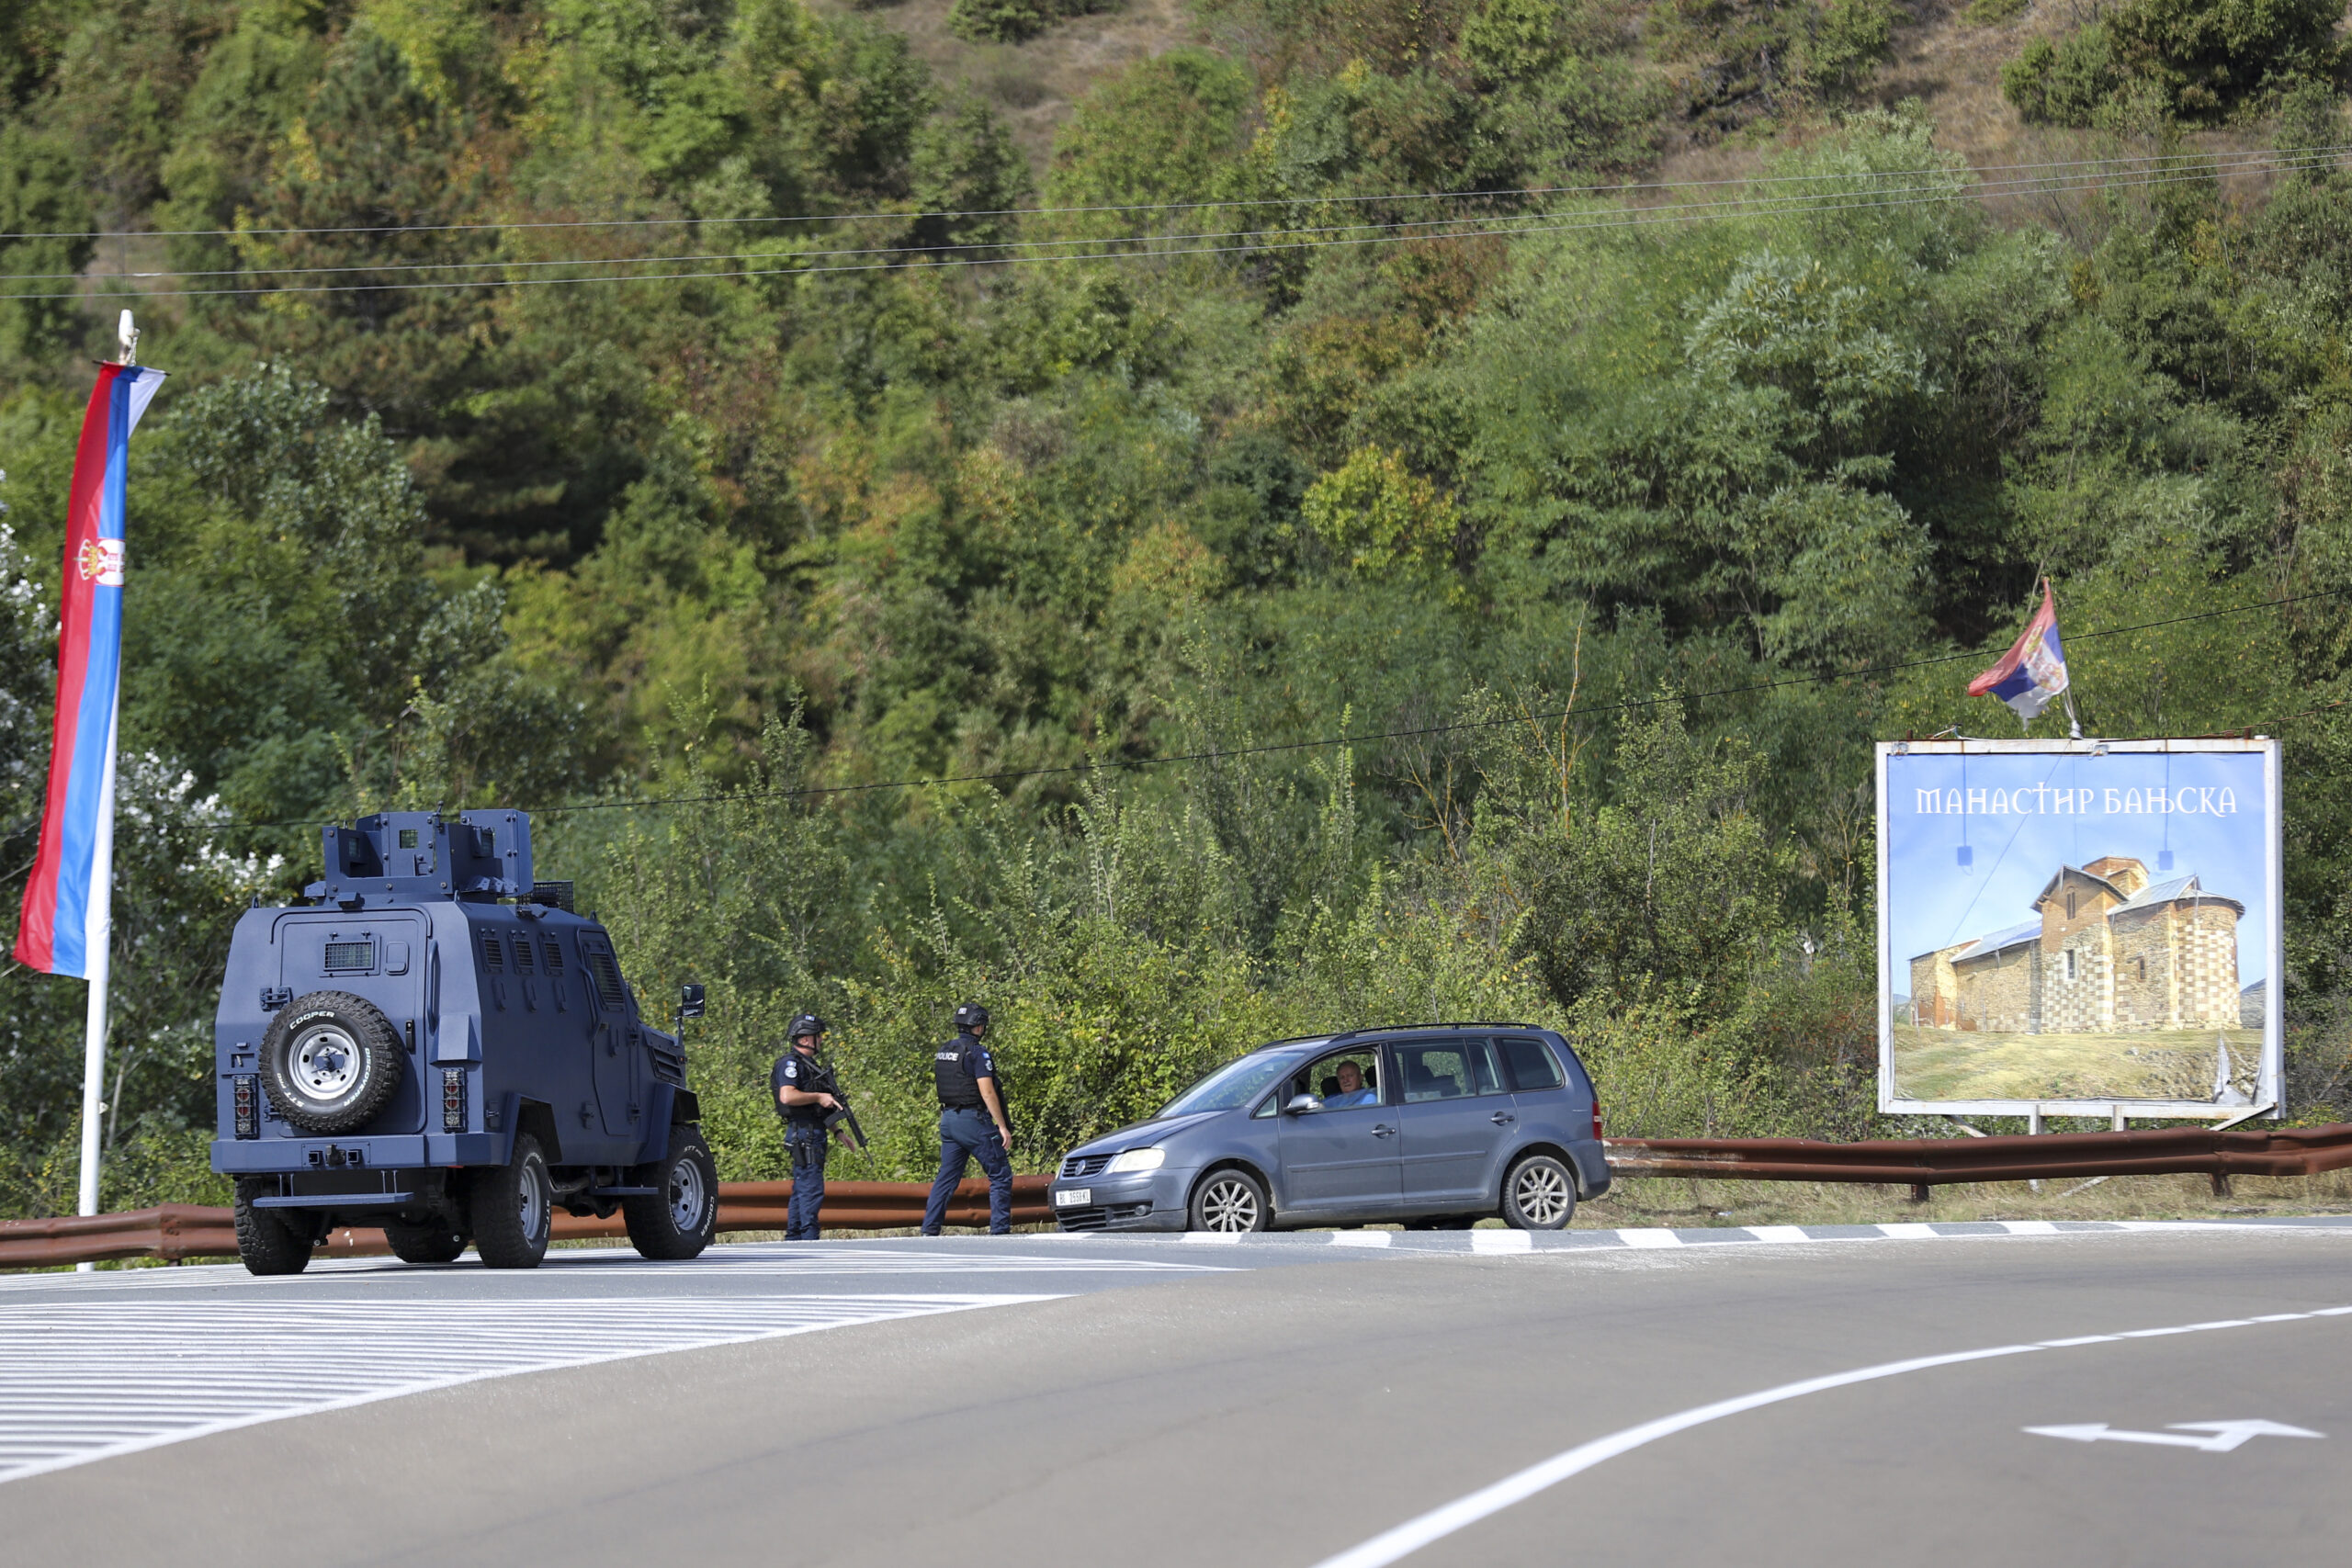 Κοσοβάρος πρωθυπουργός για την ένταση στα βόρεια μετά τον θάνατο αστυνομικού: Οι Αρχές περικύκλωσαν 30 ενόπλους σε μοναστήρι